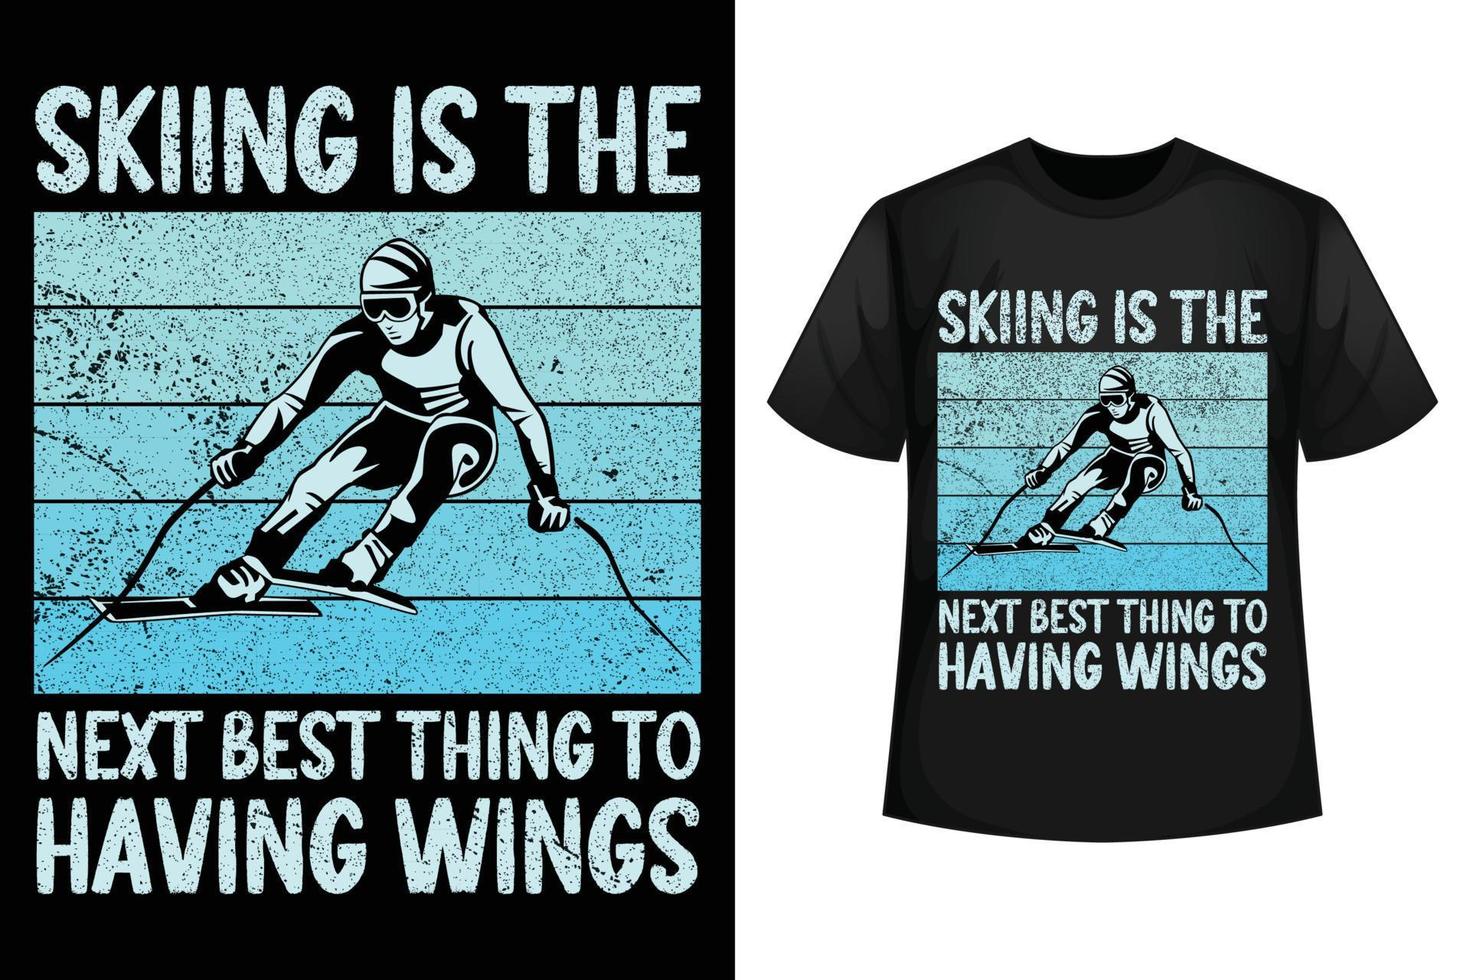 Skifahren ist das Nächstbeste, Flügel zu haben - Designvorlage für Ski-T-Shirts vektor